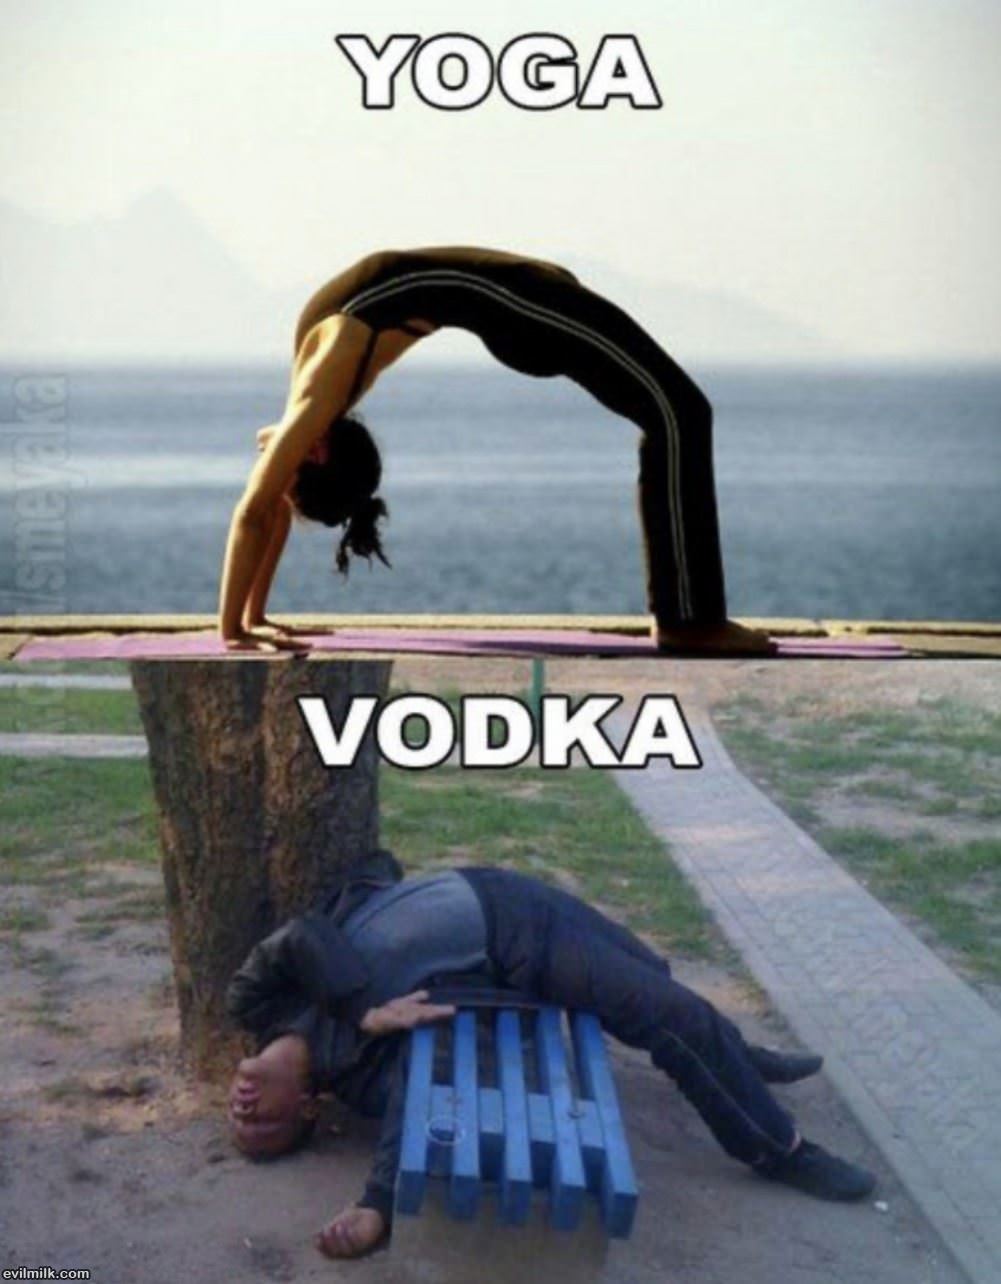 Yoga Vs Vodka